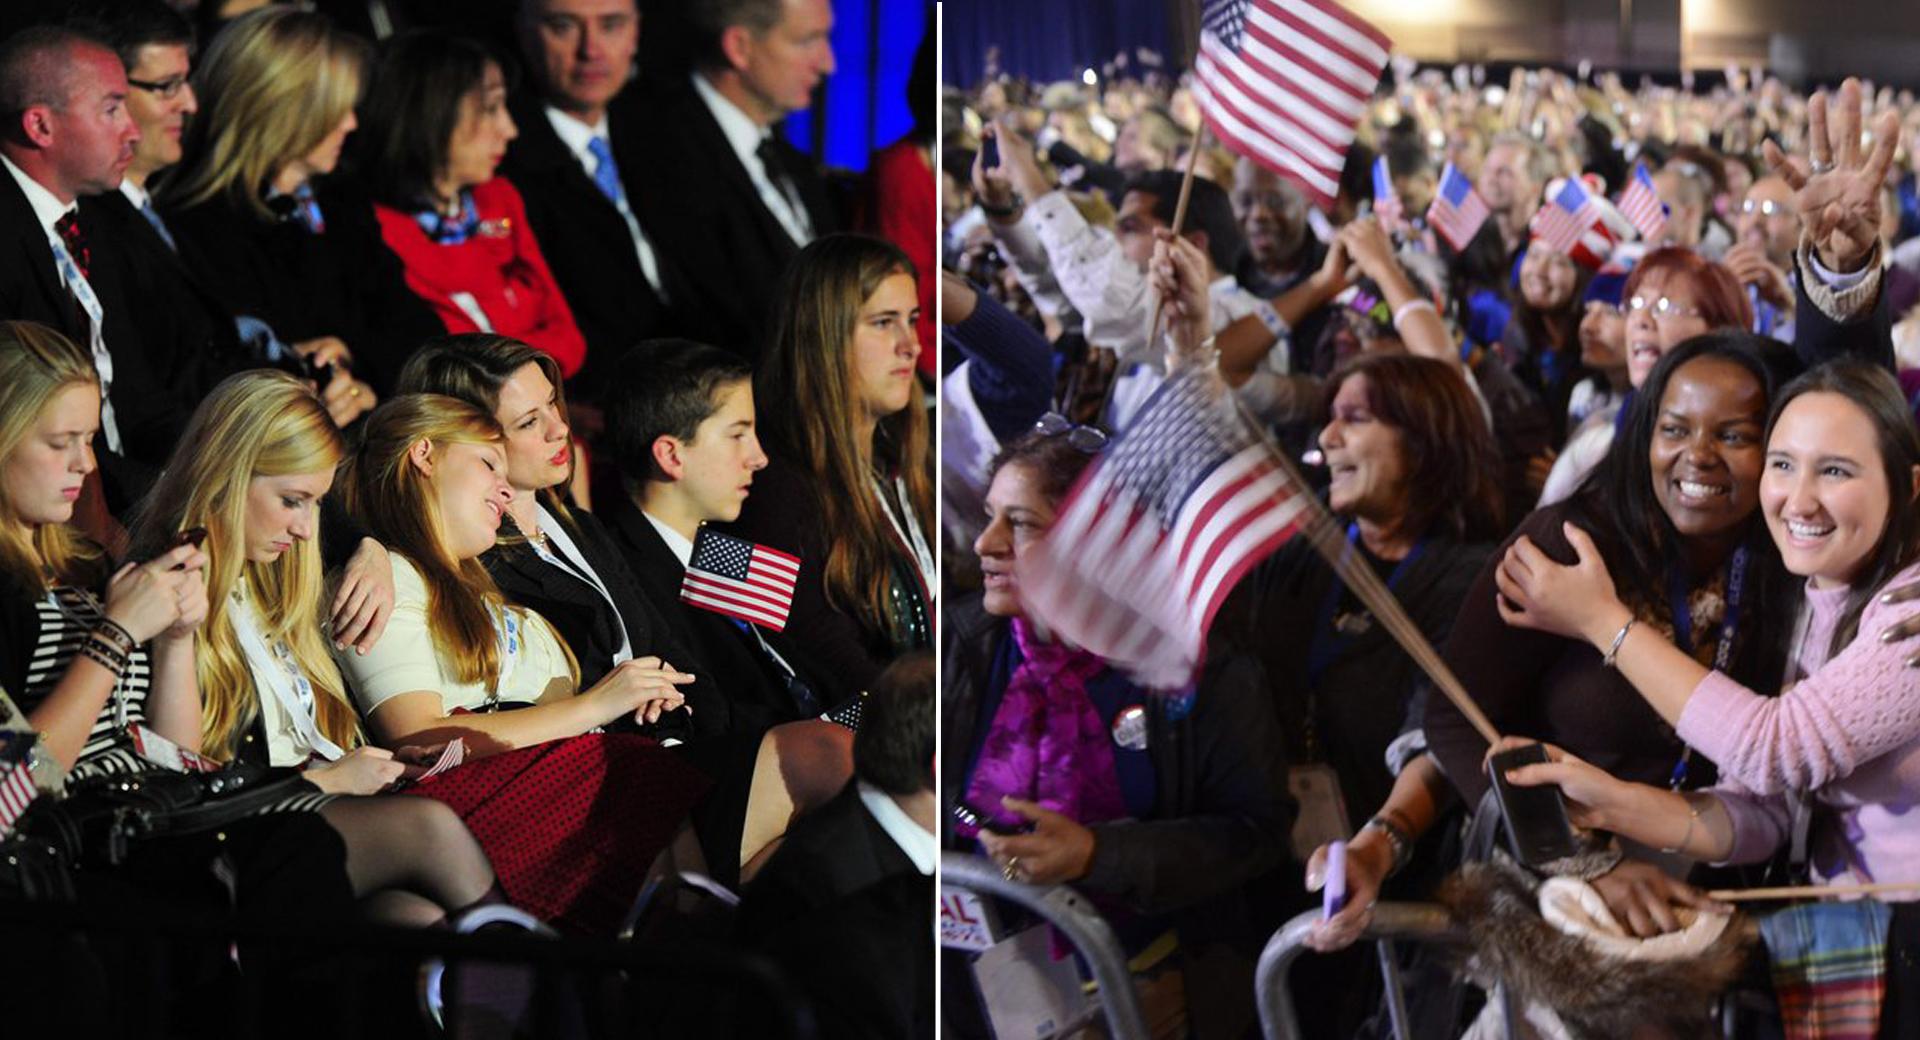 Ambiances contrastées entre les supporters de Mitt Romney et de Barack Obama. [Michael Ivins / Shawn Thew]